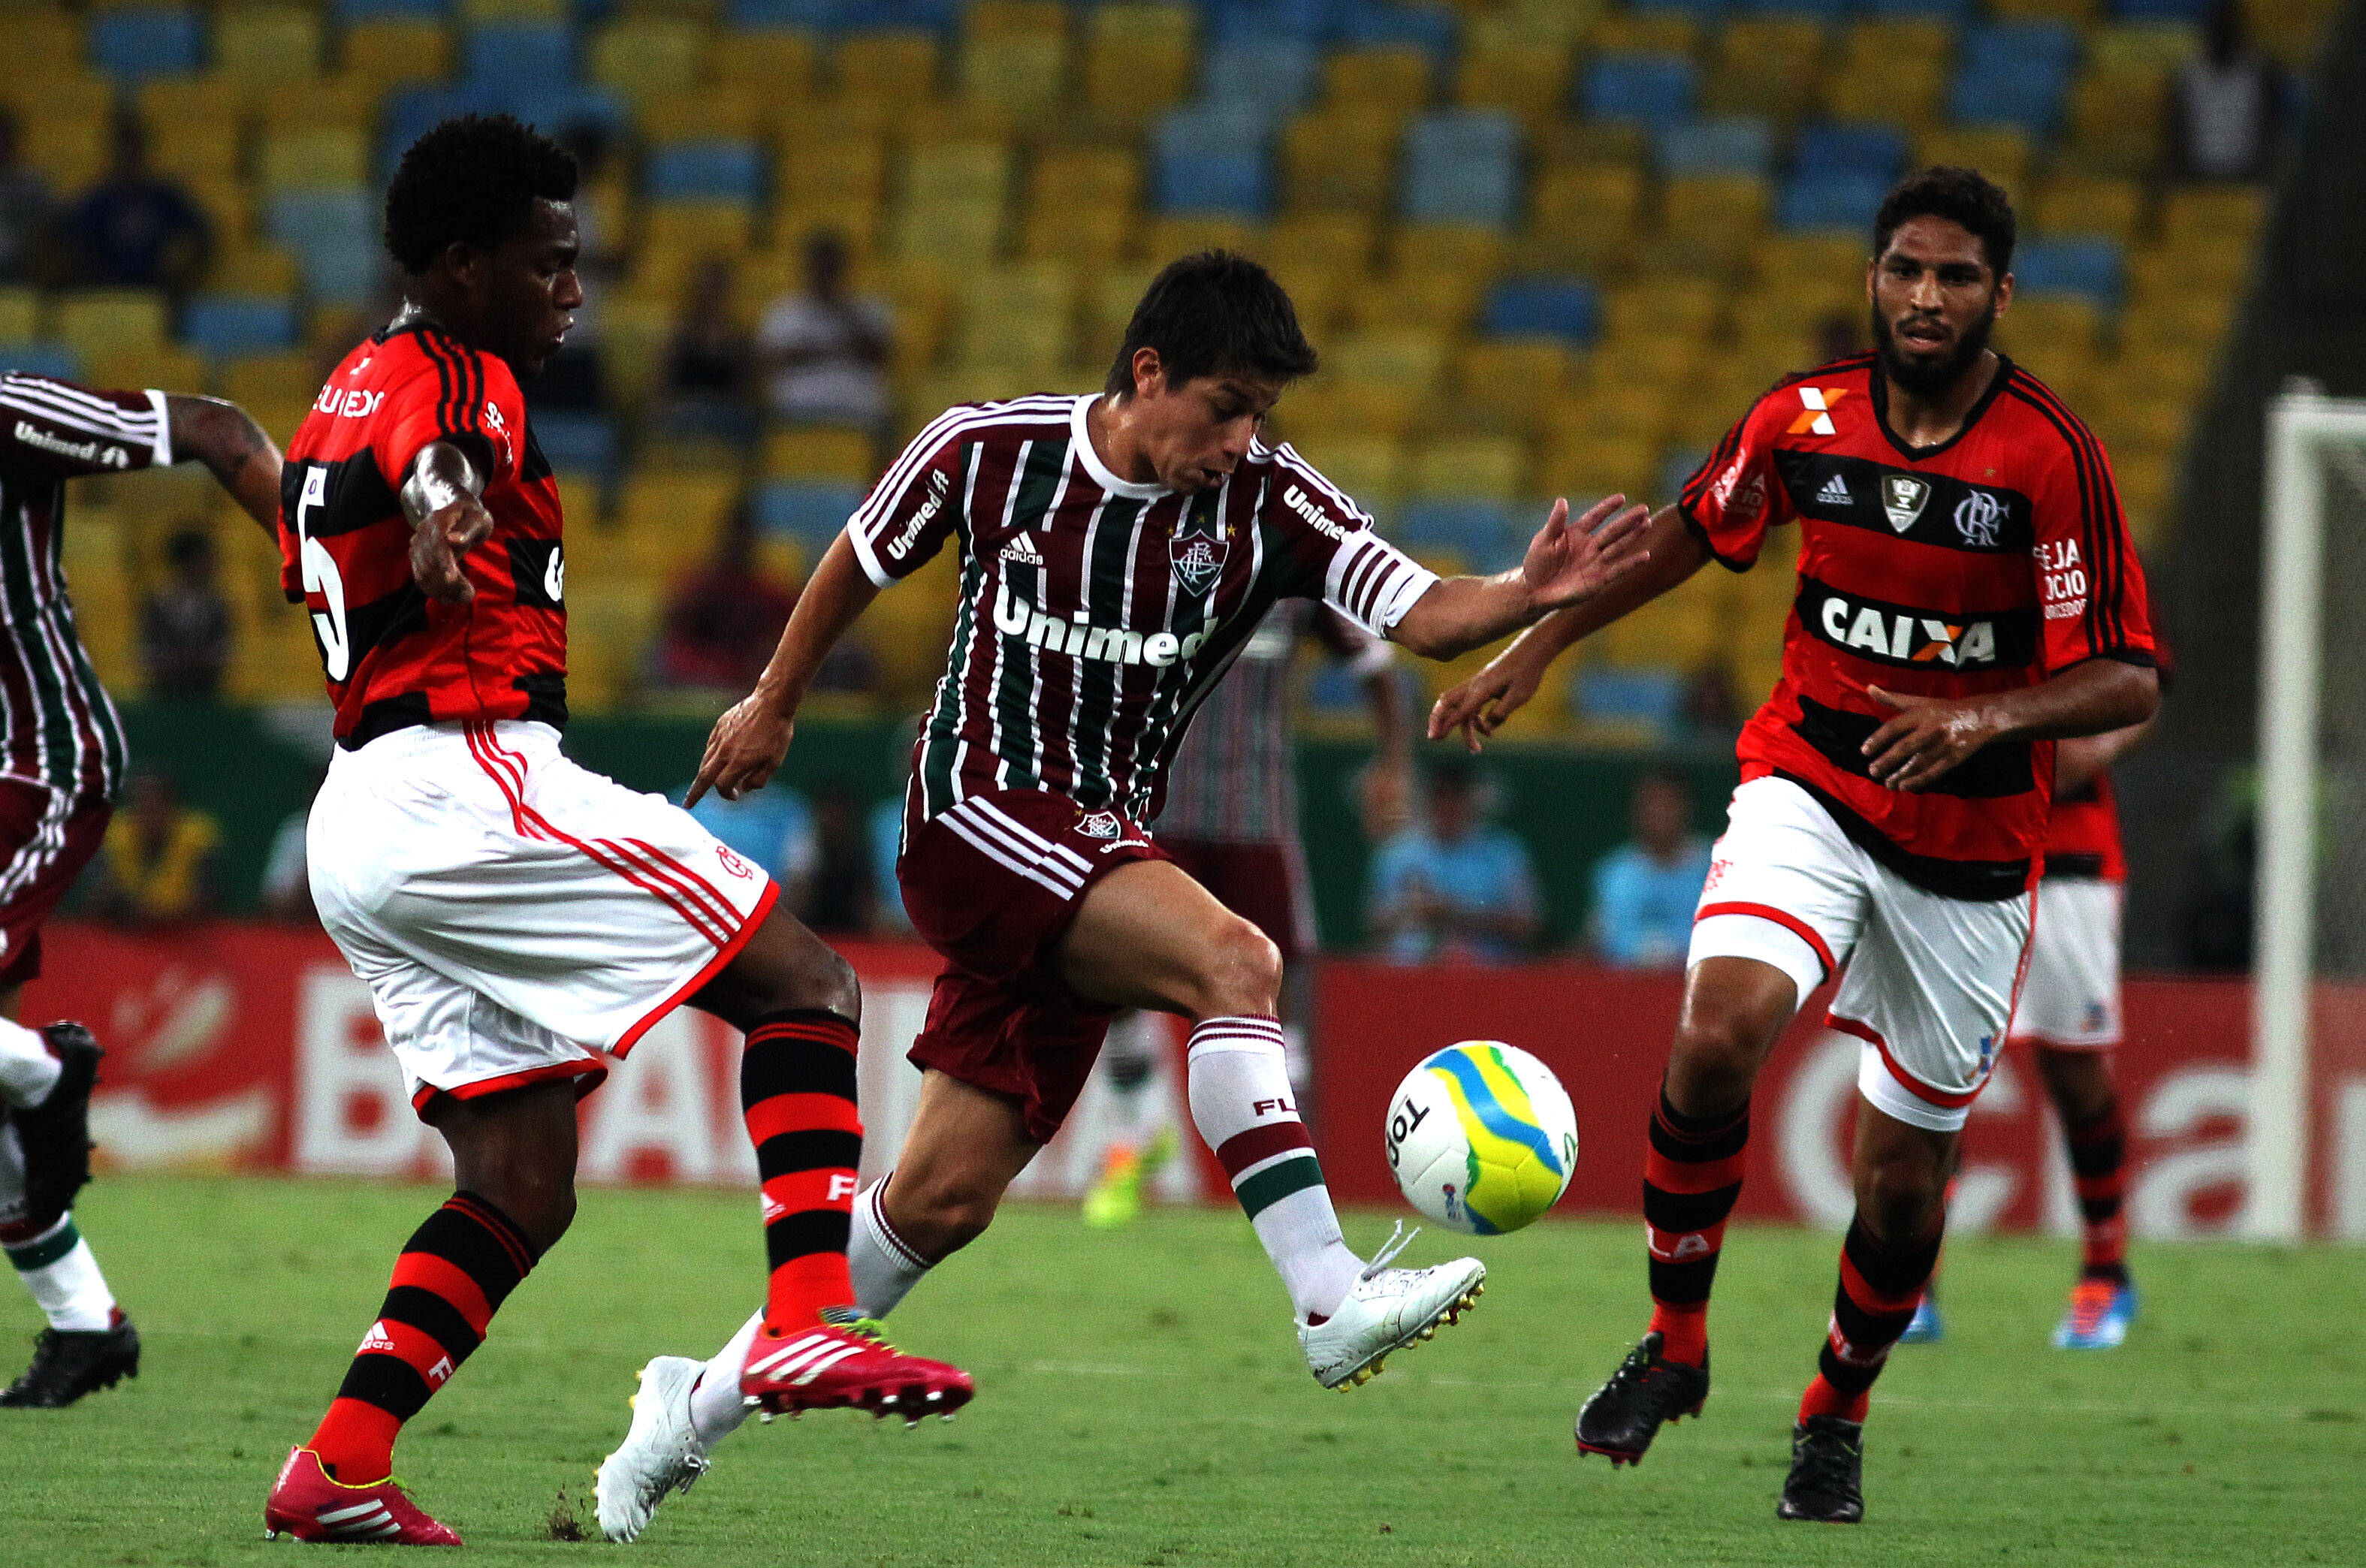 Conca tenta se livrar da marcação no duelo entre Flamengo e Fluminense pela Taça Guanabara. Foto: Flickr/Fluminense